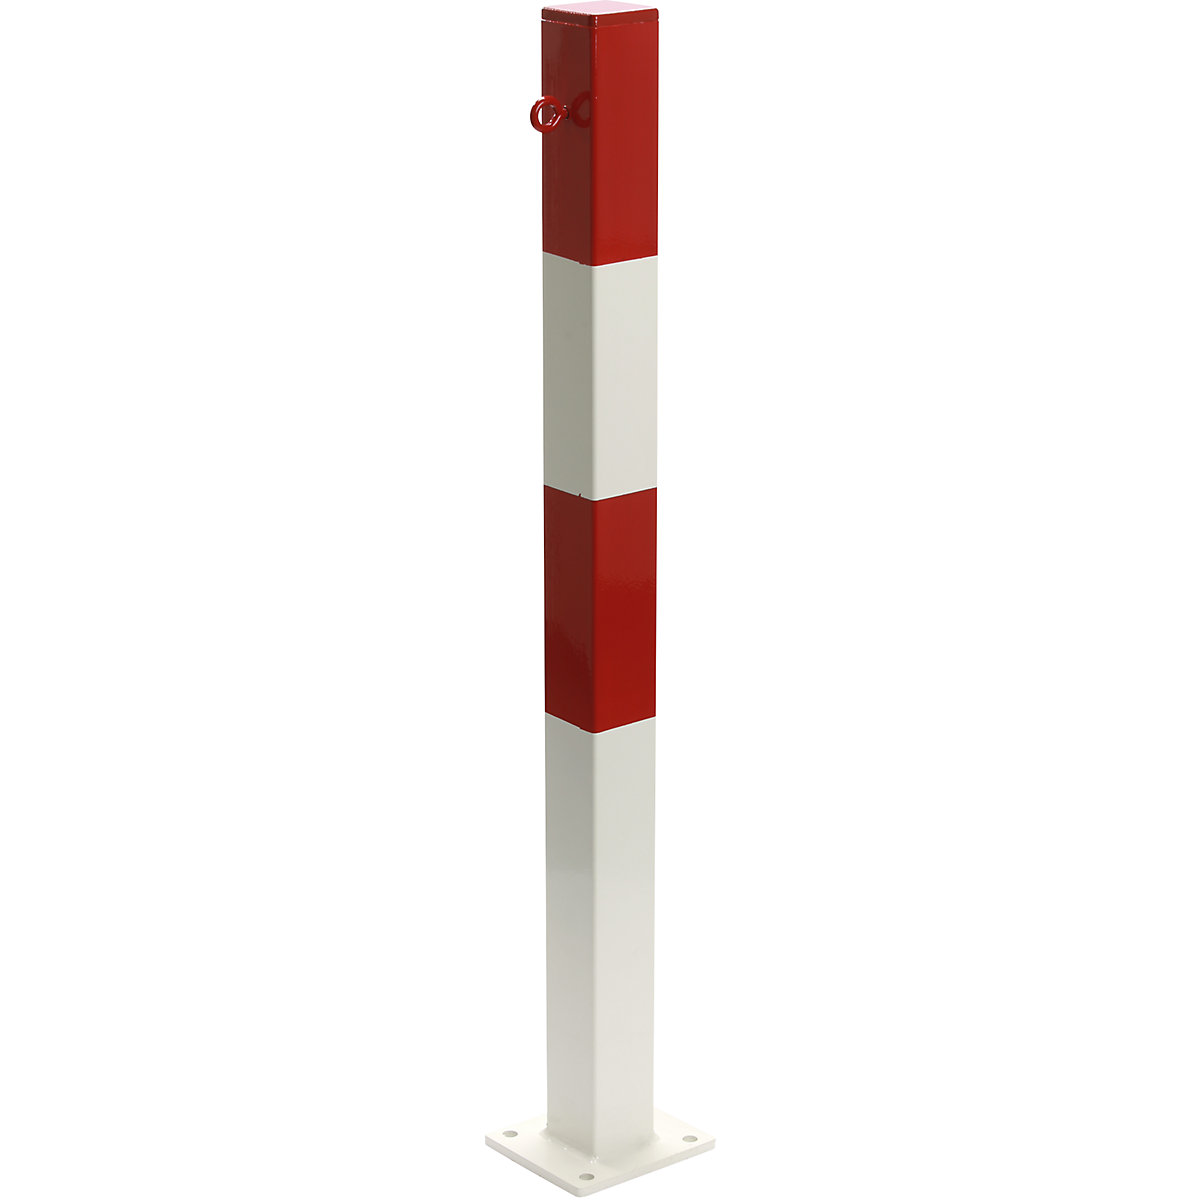 Zahradzovací stĺpik, na pripevnenie hmoždinkami, 70 x 70 mm, červeno-biela plastová povrchová úprava, 1 oko-11